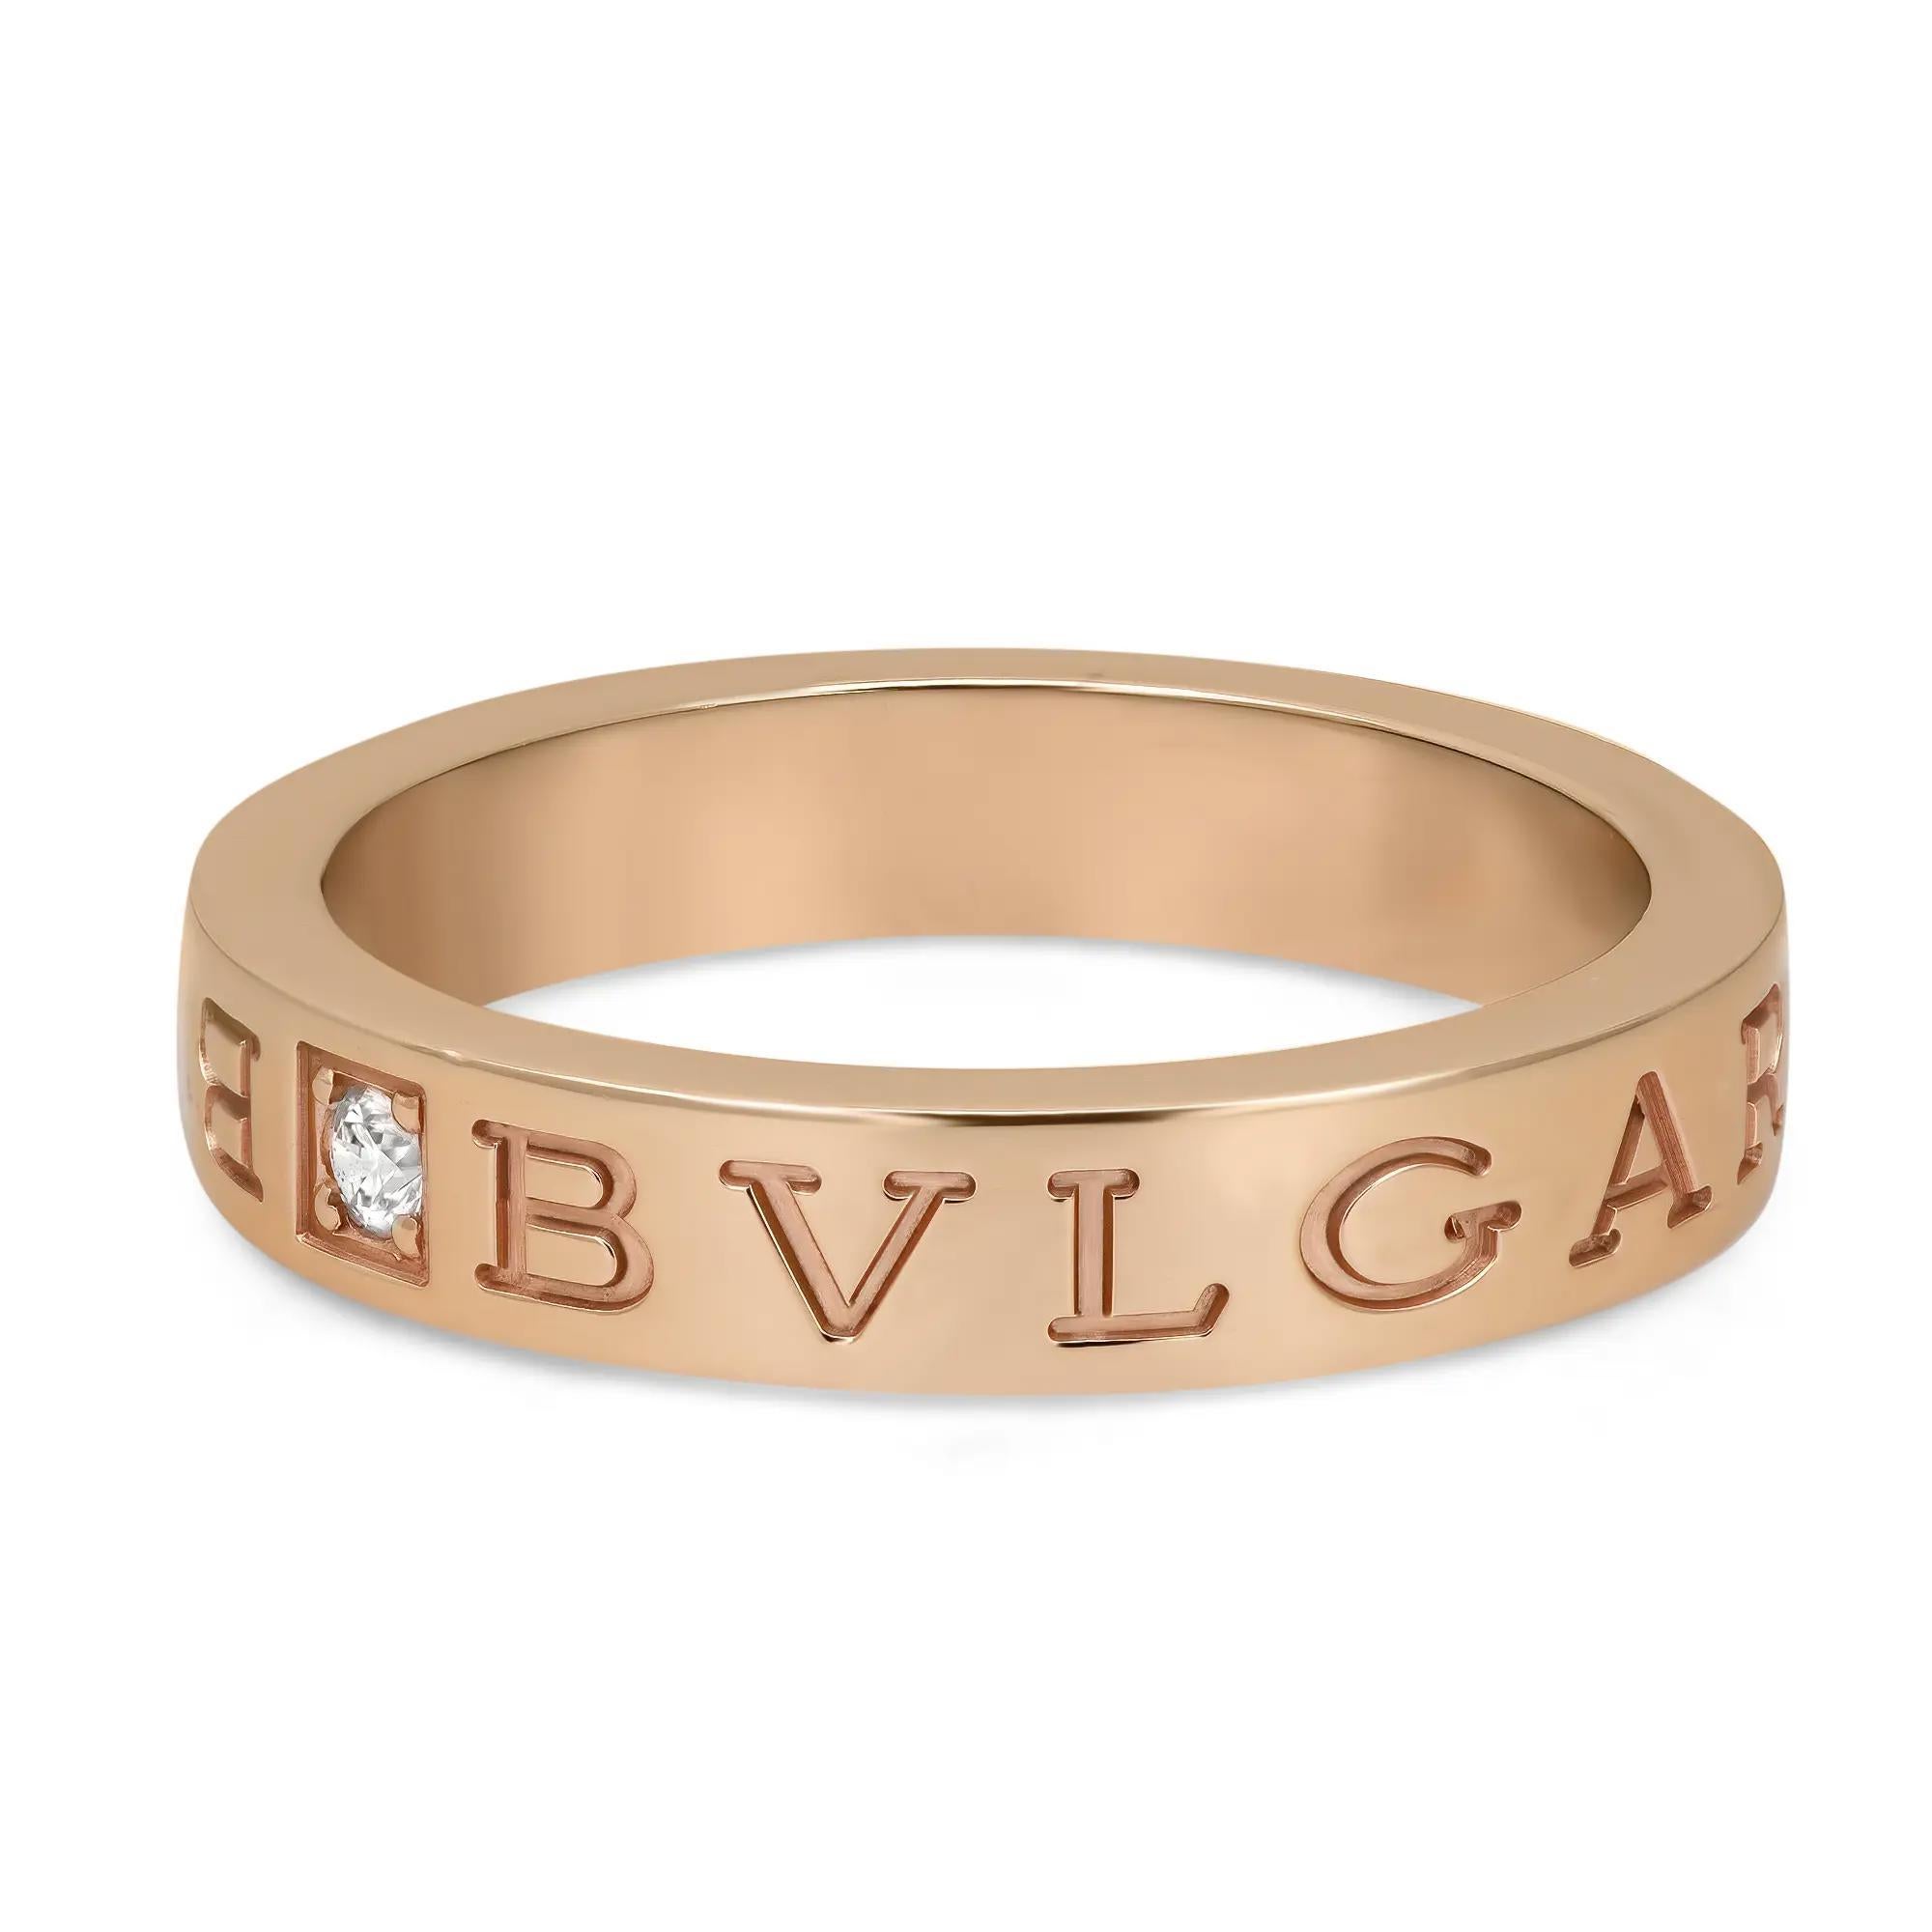 Bvlgari B.Zero1 Essential Diamond Band Ring mit einem Diamanten im Rundschliff in der Mitte und eingraviertem BVLGARI-Logo auf beiden Seiten. Gefertigt aus glänzendem 18 Karat Roségold. Ringgröße: 58 US 8.5. Breite: 3,9 mm. Gewicht des Diamanten: